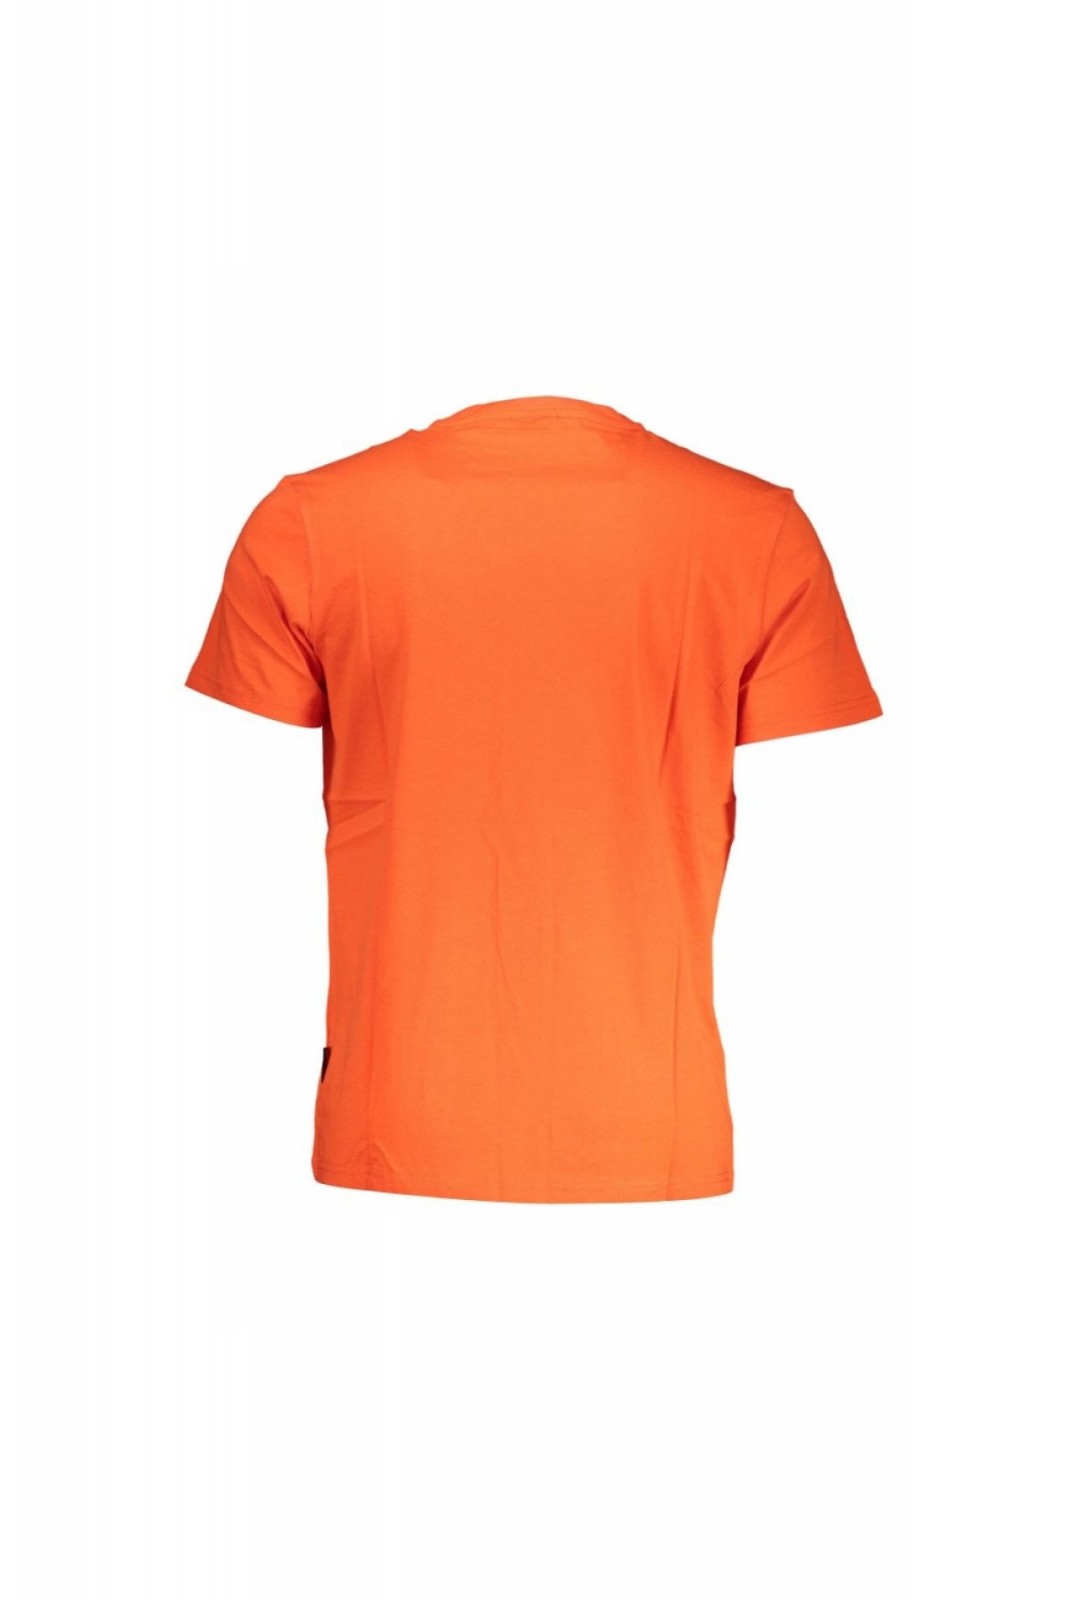 T-shirt MC - NAPAPIJRI - NP0A4H8D-SALIS-SS-SUM_ROSSO_R05 Napapijri RED CHERRY_R05 NP0A4H8D-SALIS-SS-SUM